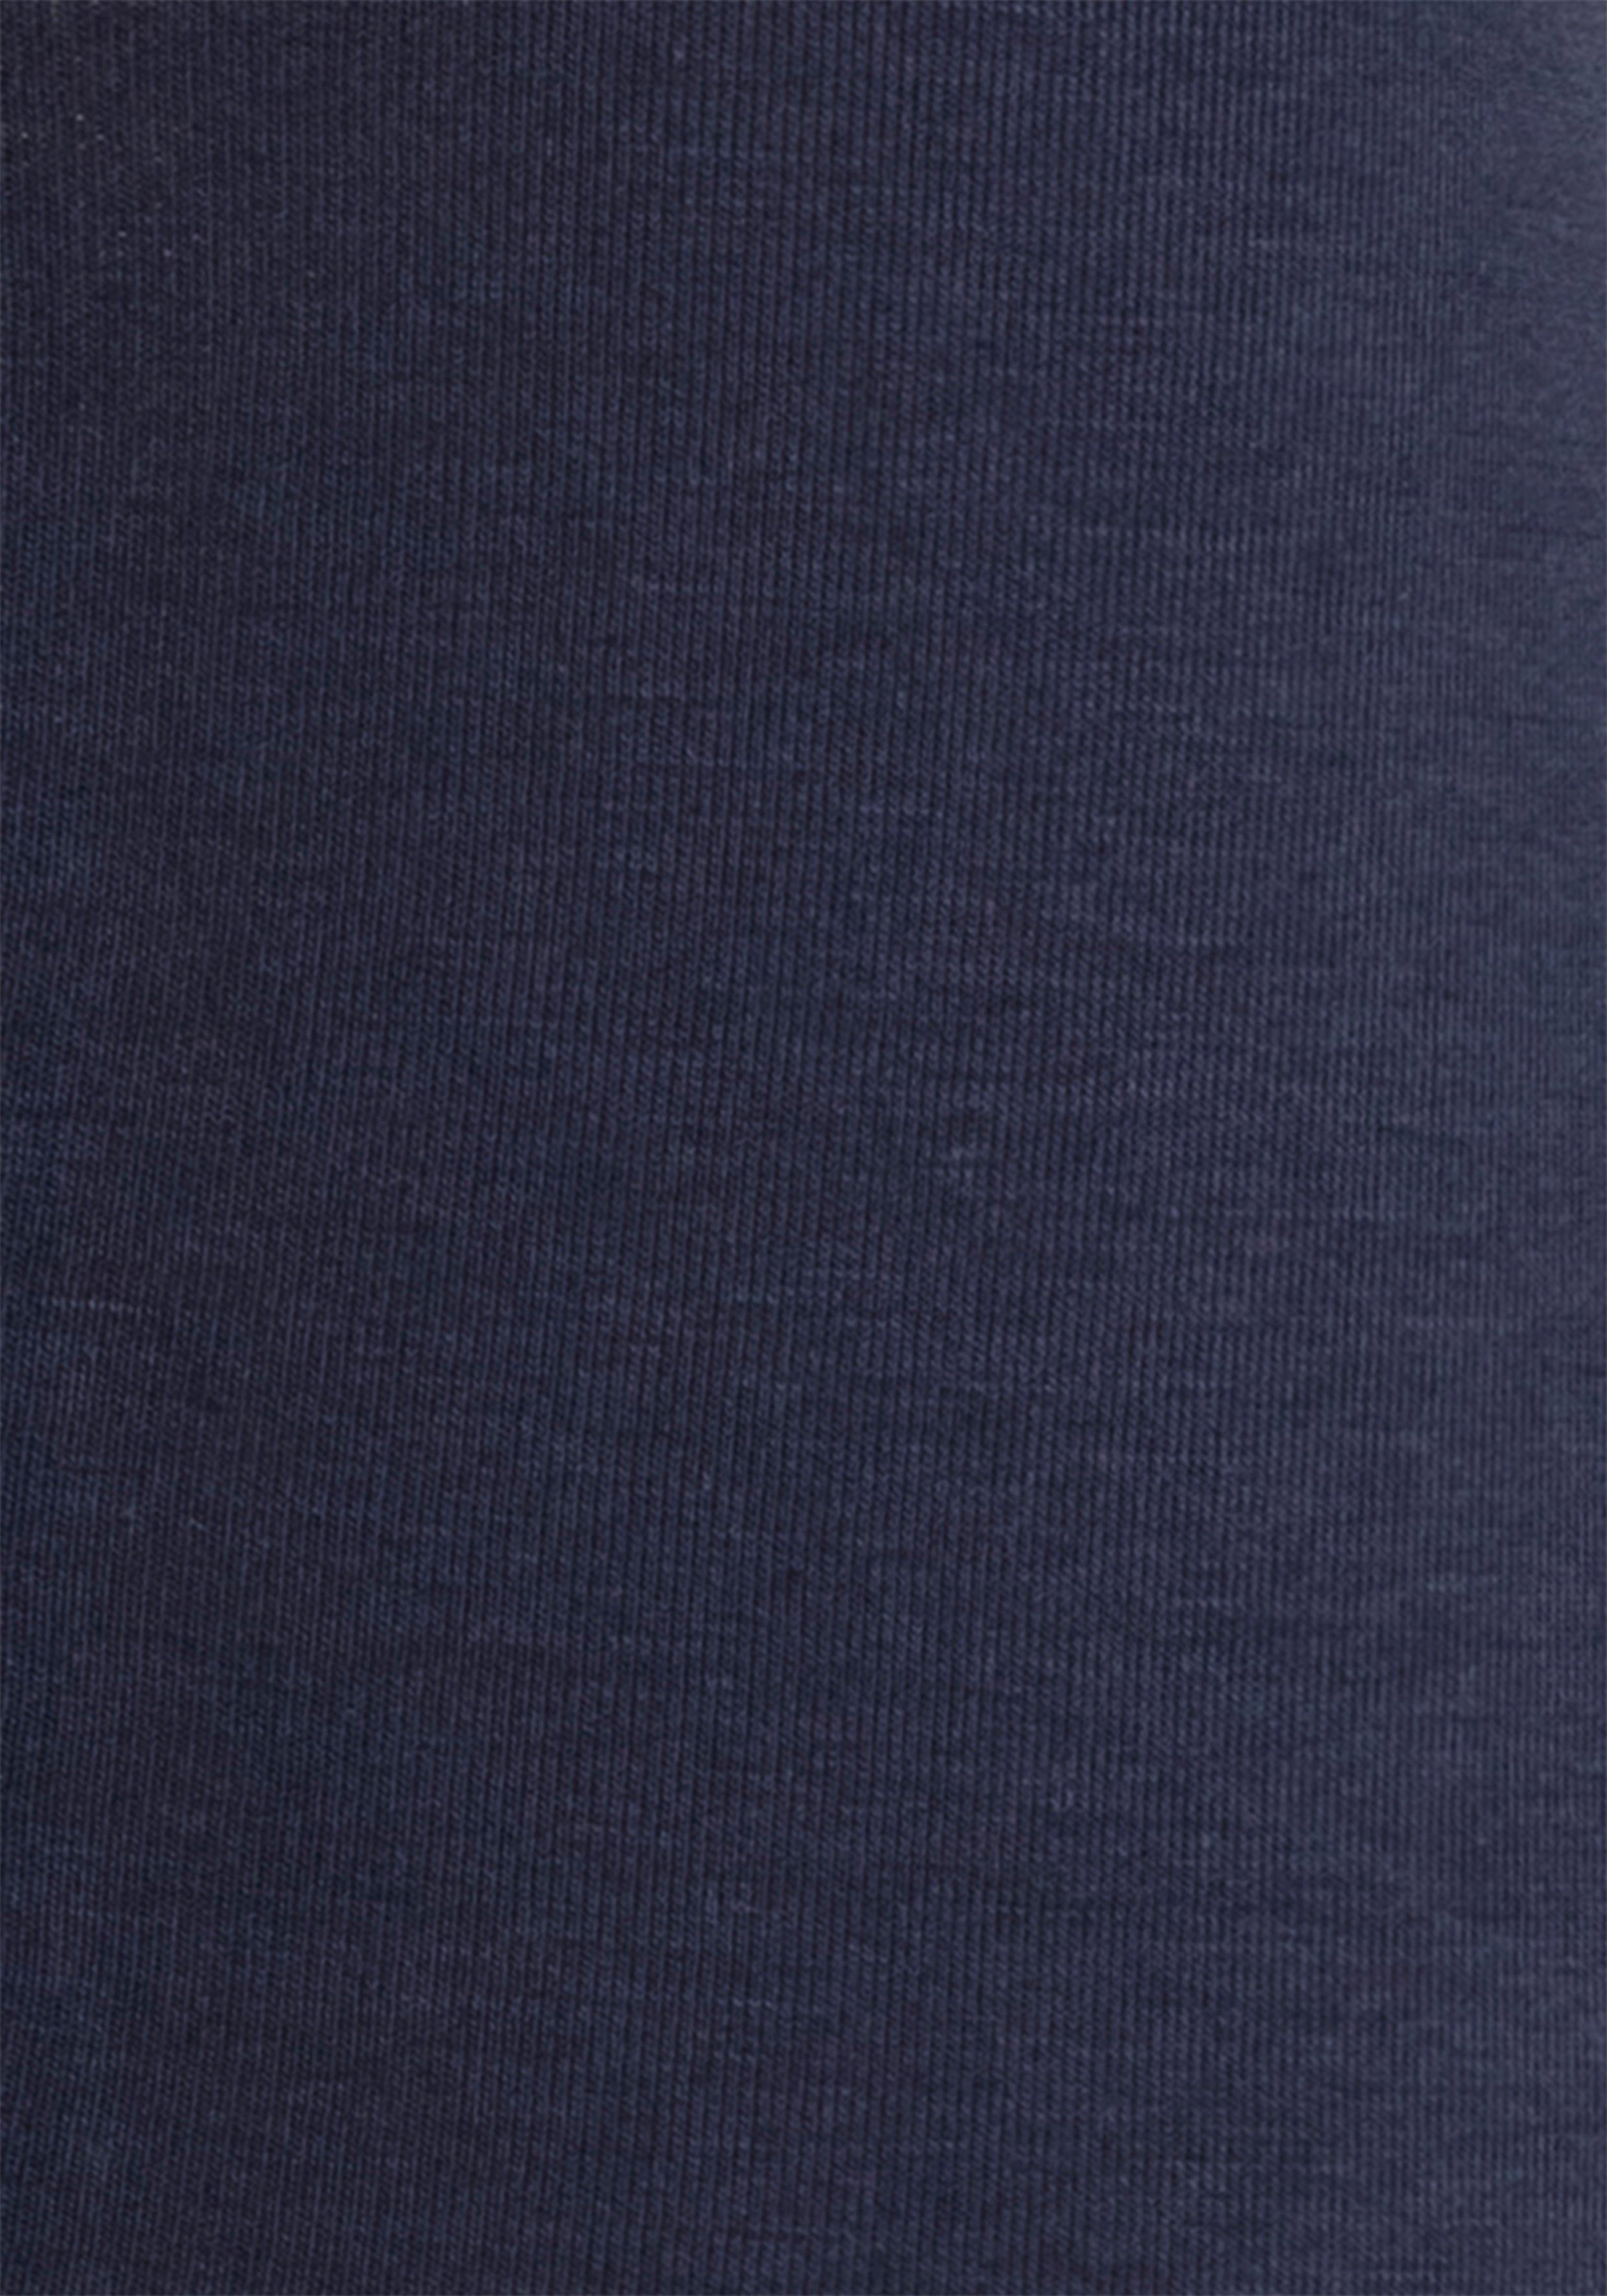 Bench. Boxershorts (Packung, Hipster-Form navy-grau-meliert, mit navy-weiß navy-rot, navy-blau, 4-St) Overlock-Nähten vorn in